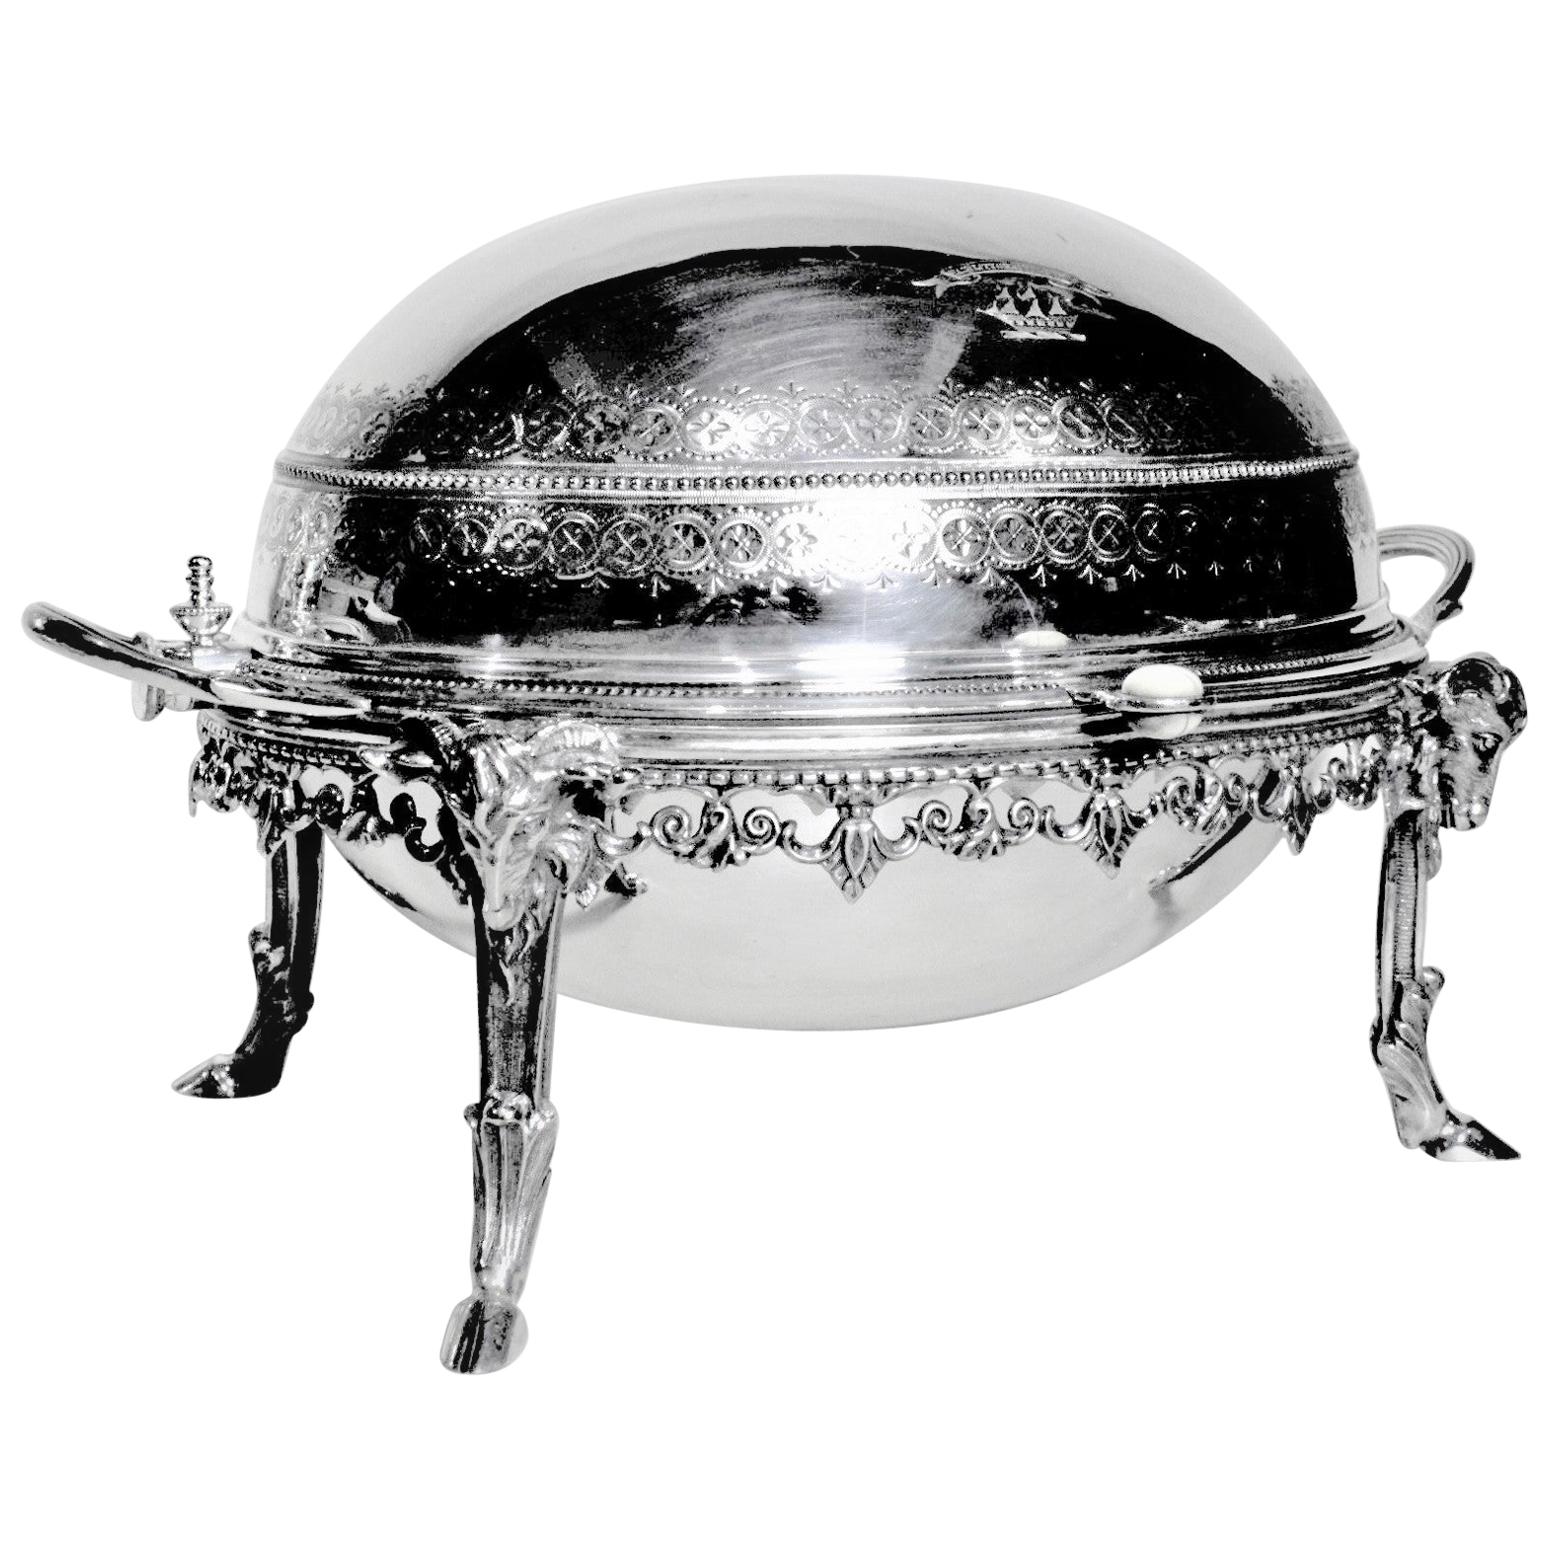 Dome de petit déjeuner anglais ancien en métal argenté tournant avec détails en forme de bélier figuratif